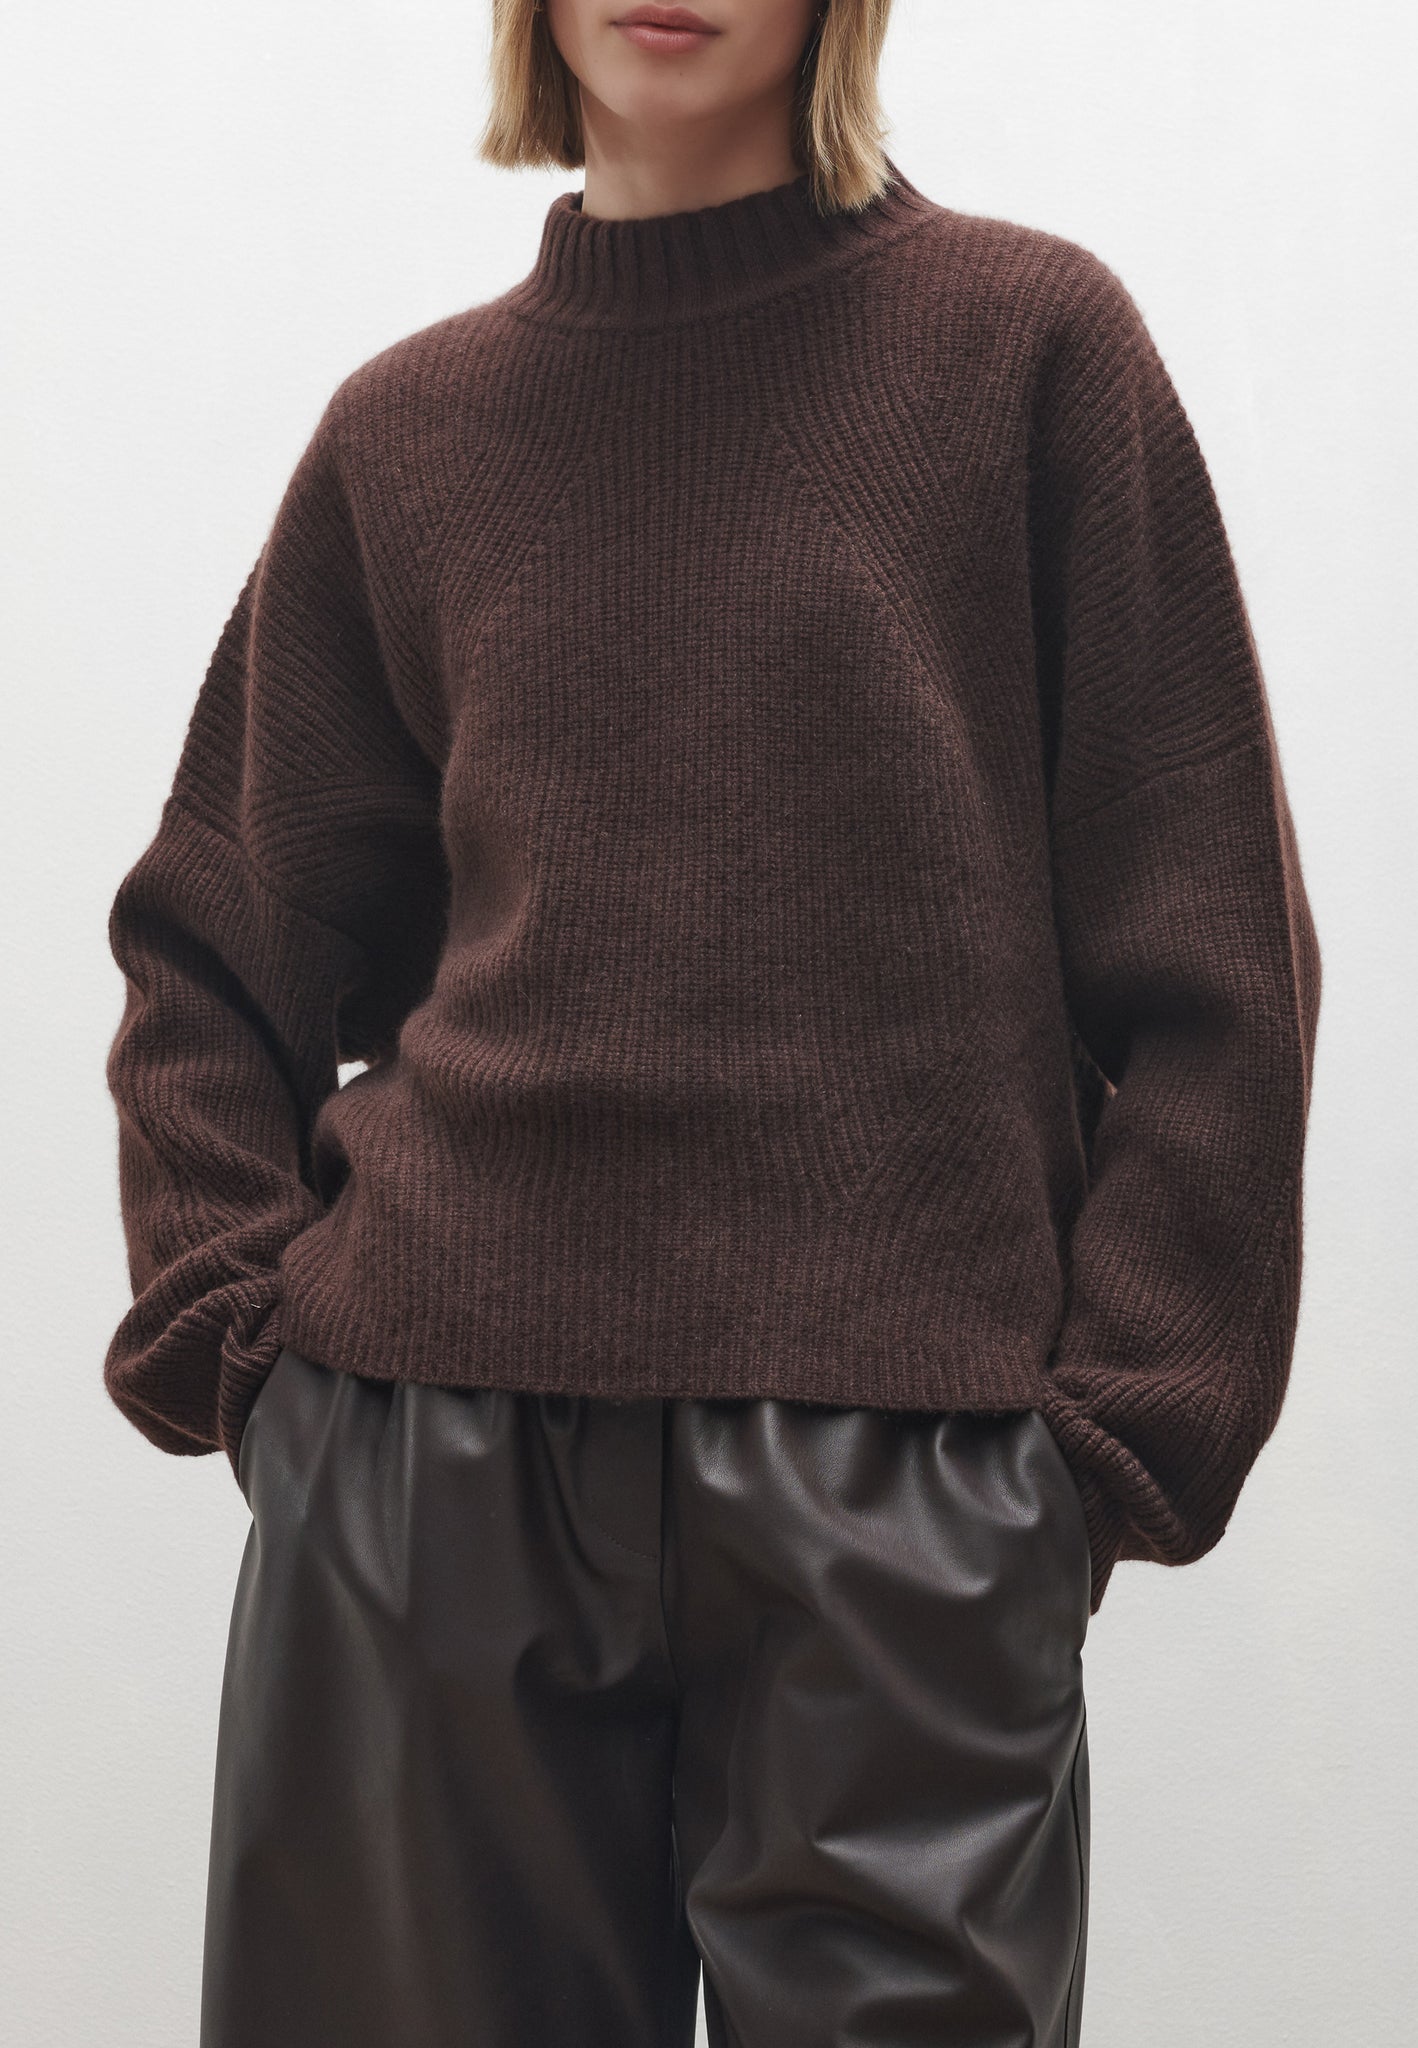 LECCE | Cashmere knit